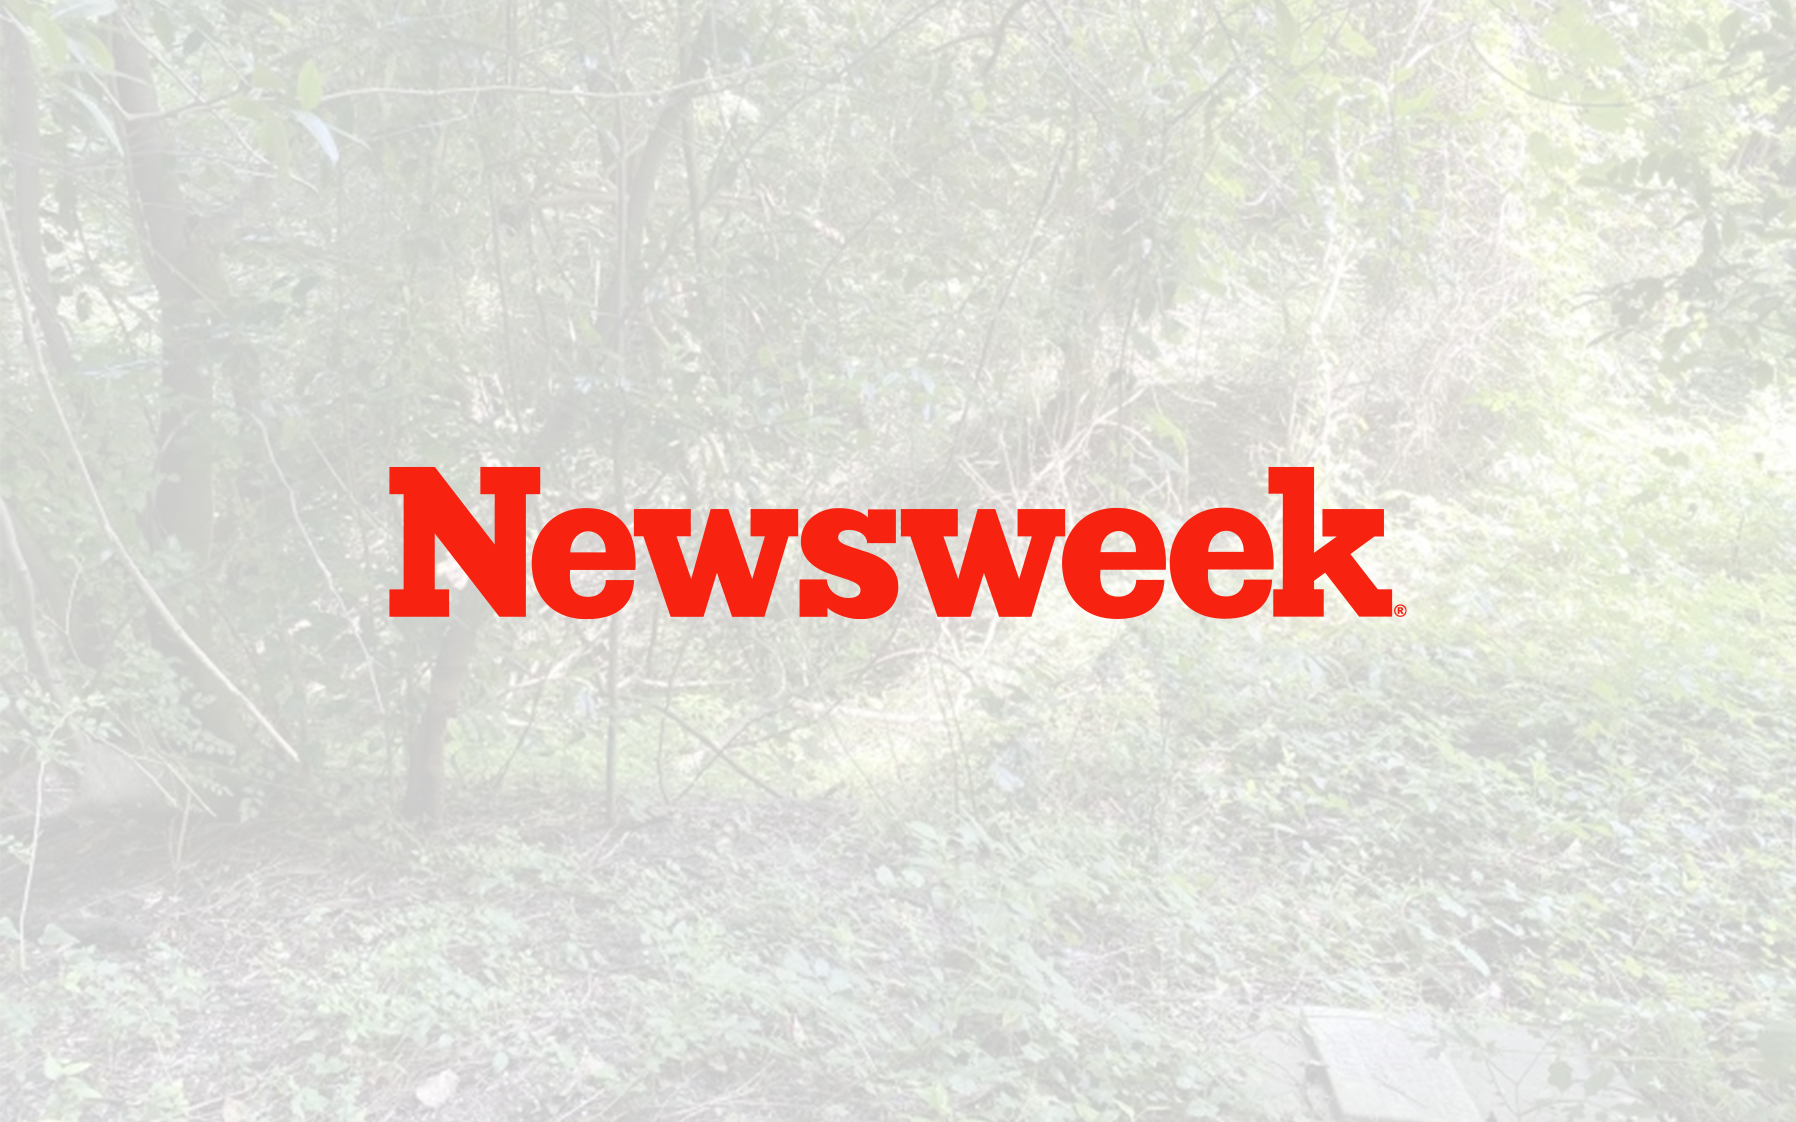 News week logo